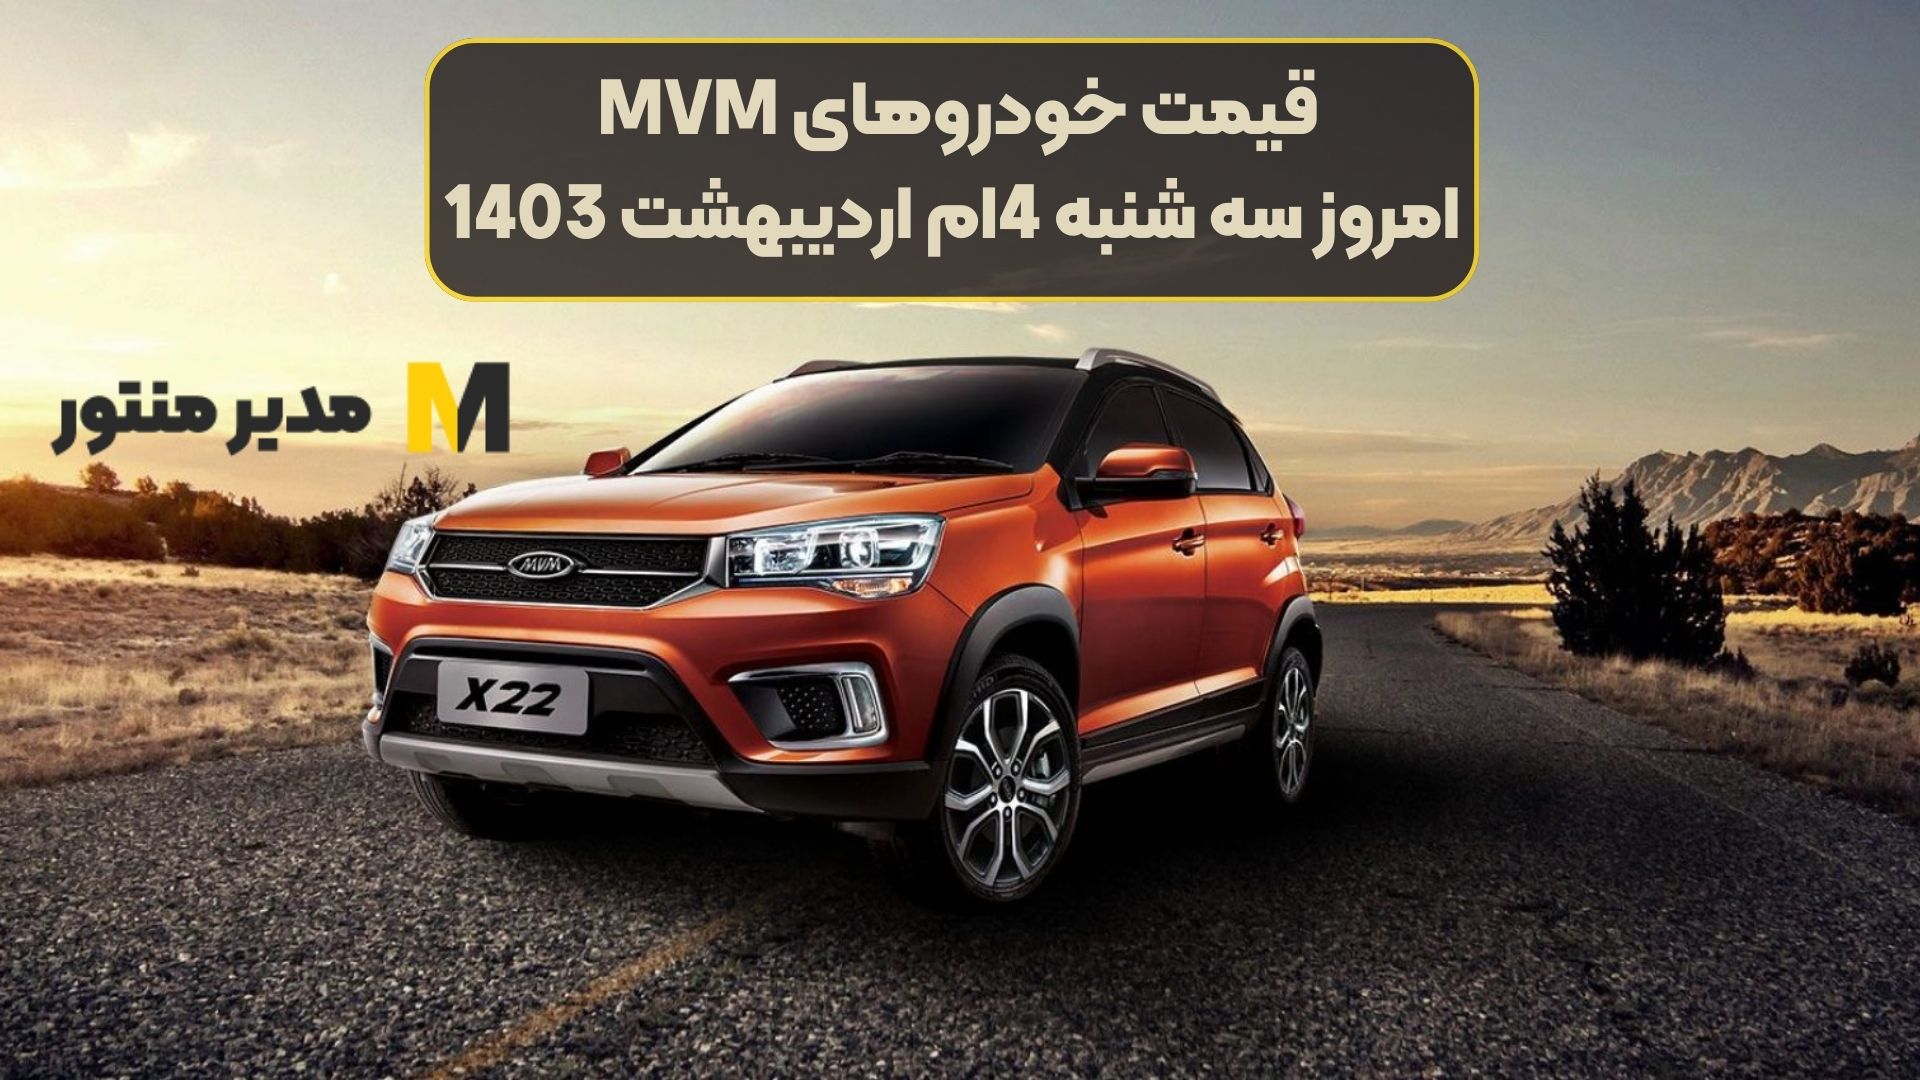 قیمت خودروهای MVM امروز سه شنبه 4ام اردیبهشت 1403